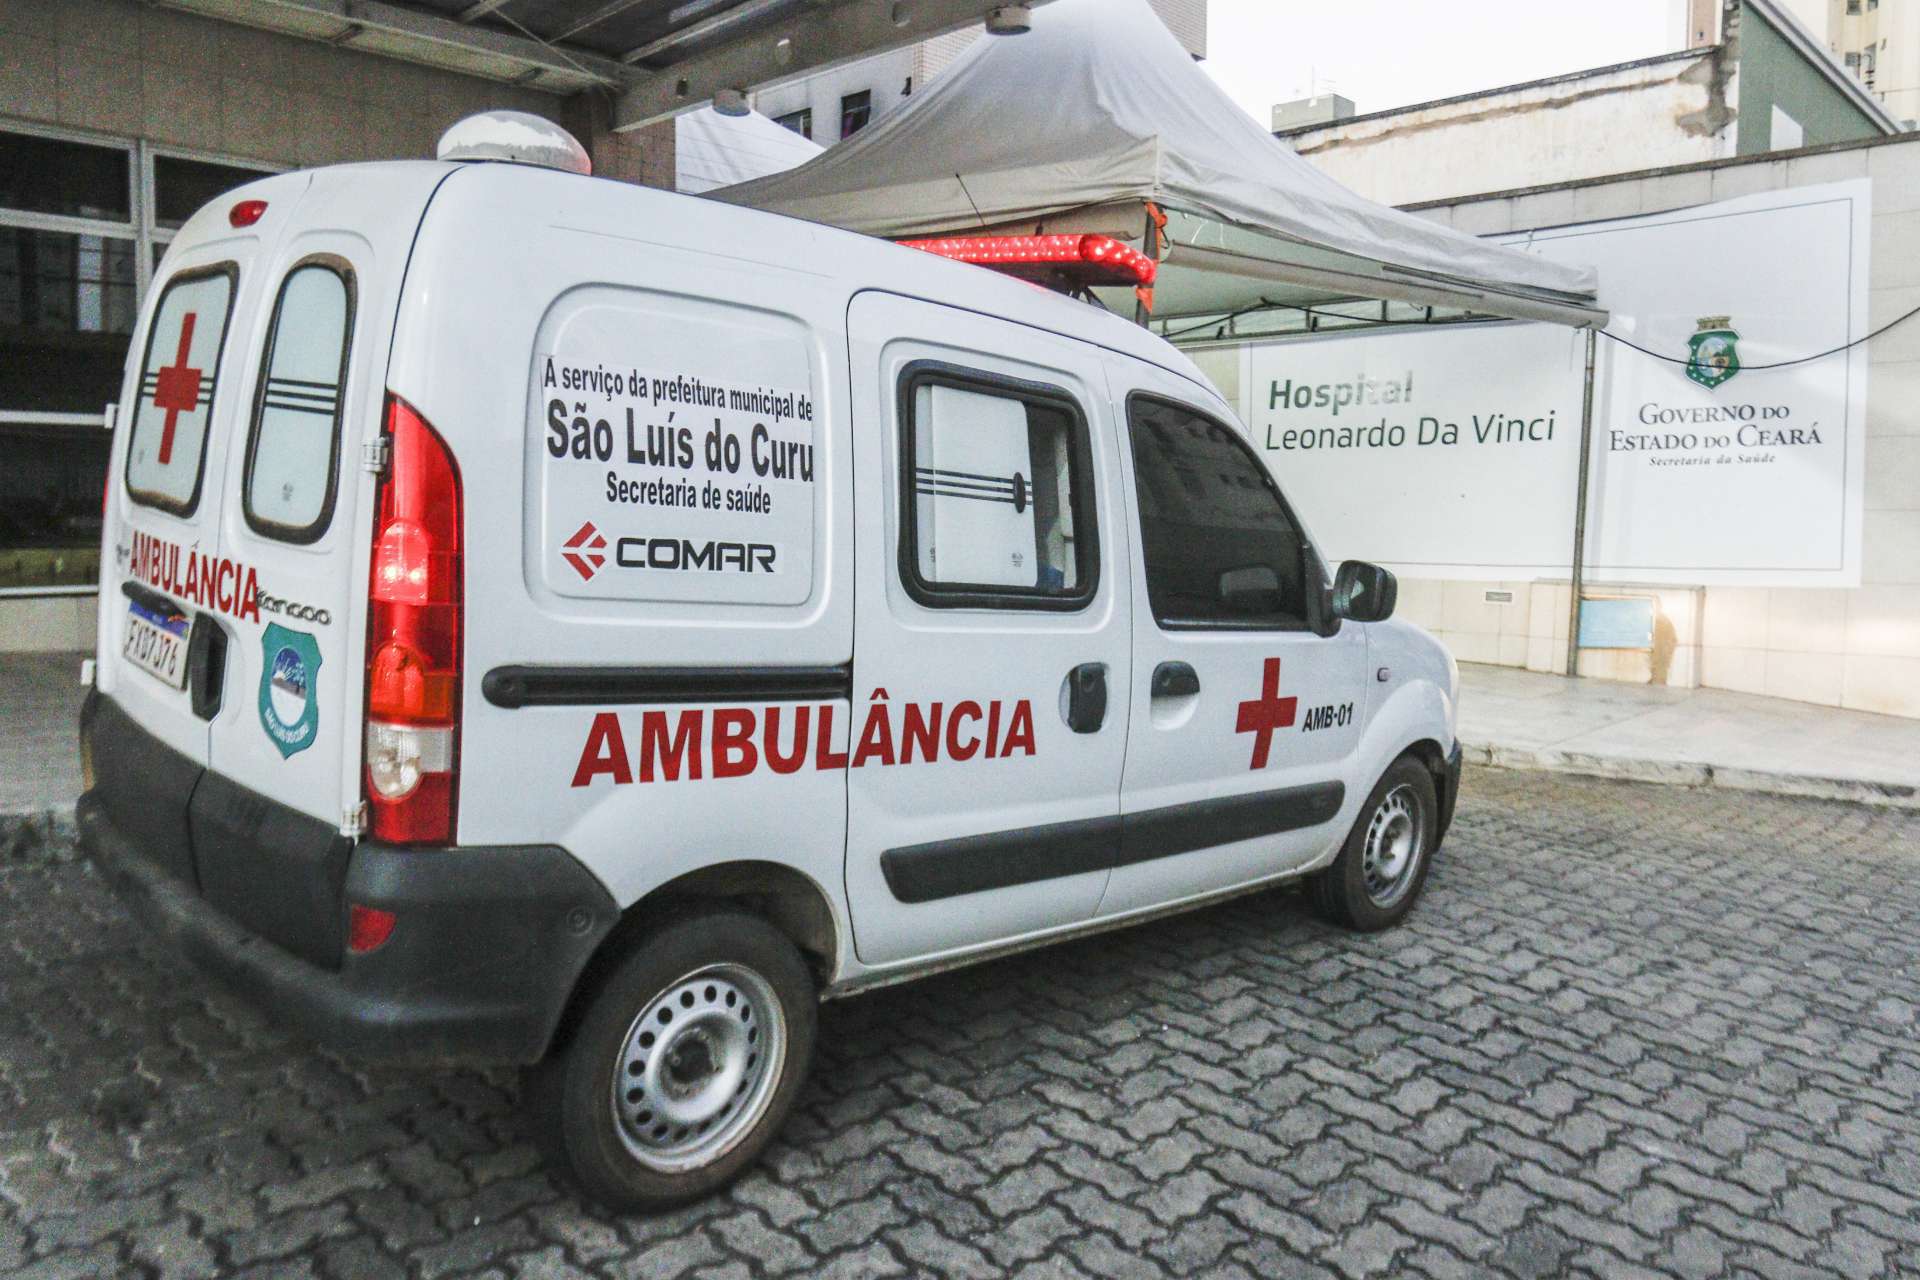 MOVIMENTO DE ambulâncias do Interior na porta do hospital Leonardo Da Vinci, em Fortaleza, referência no tratamento de Covid-19  (Foto: Barbara Moira)